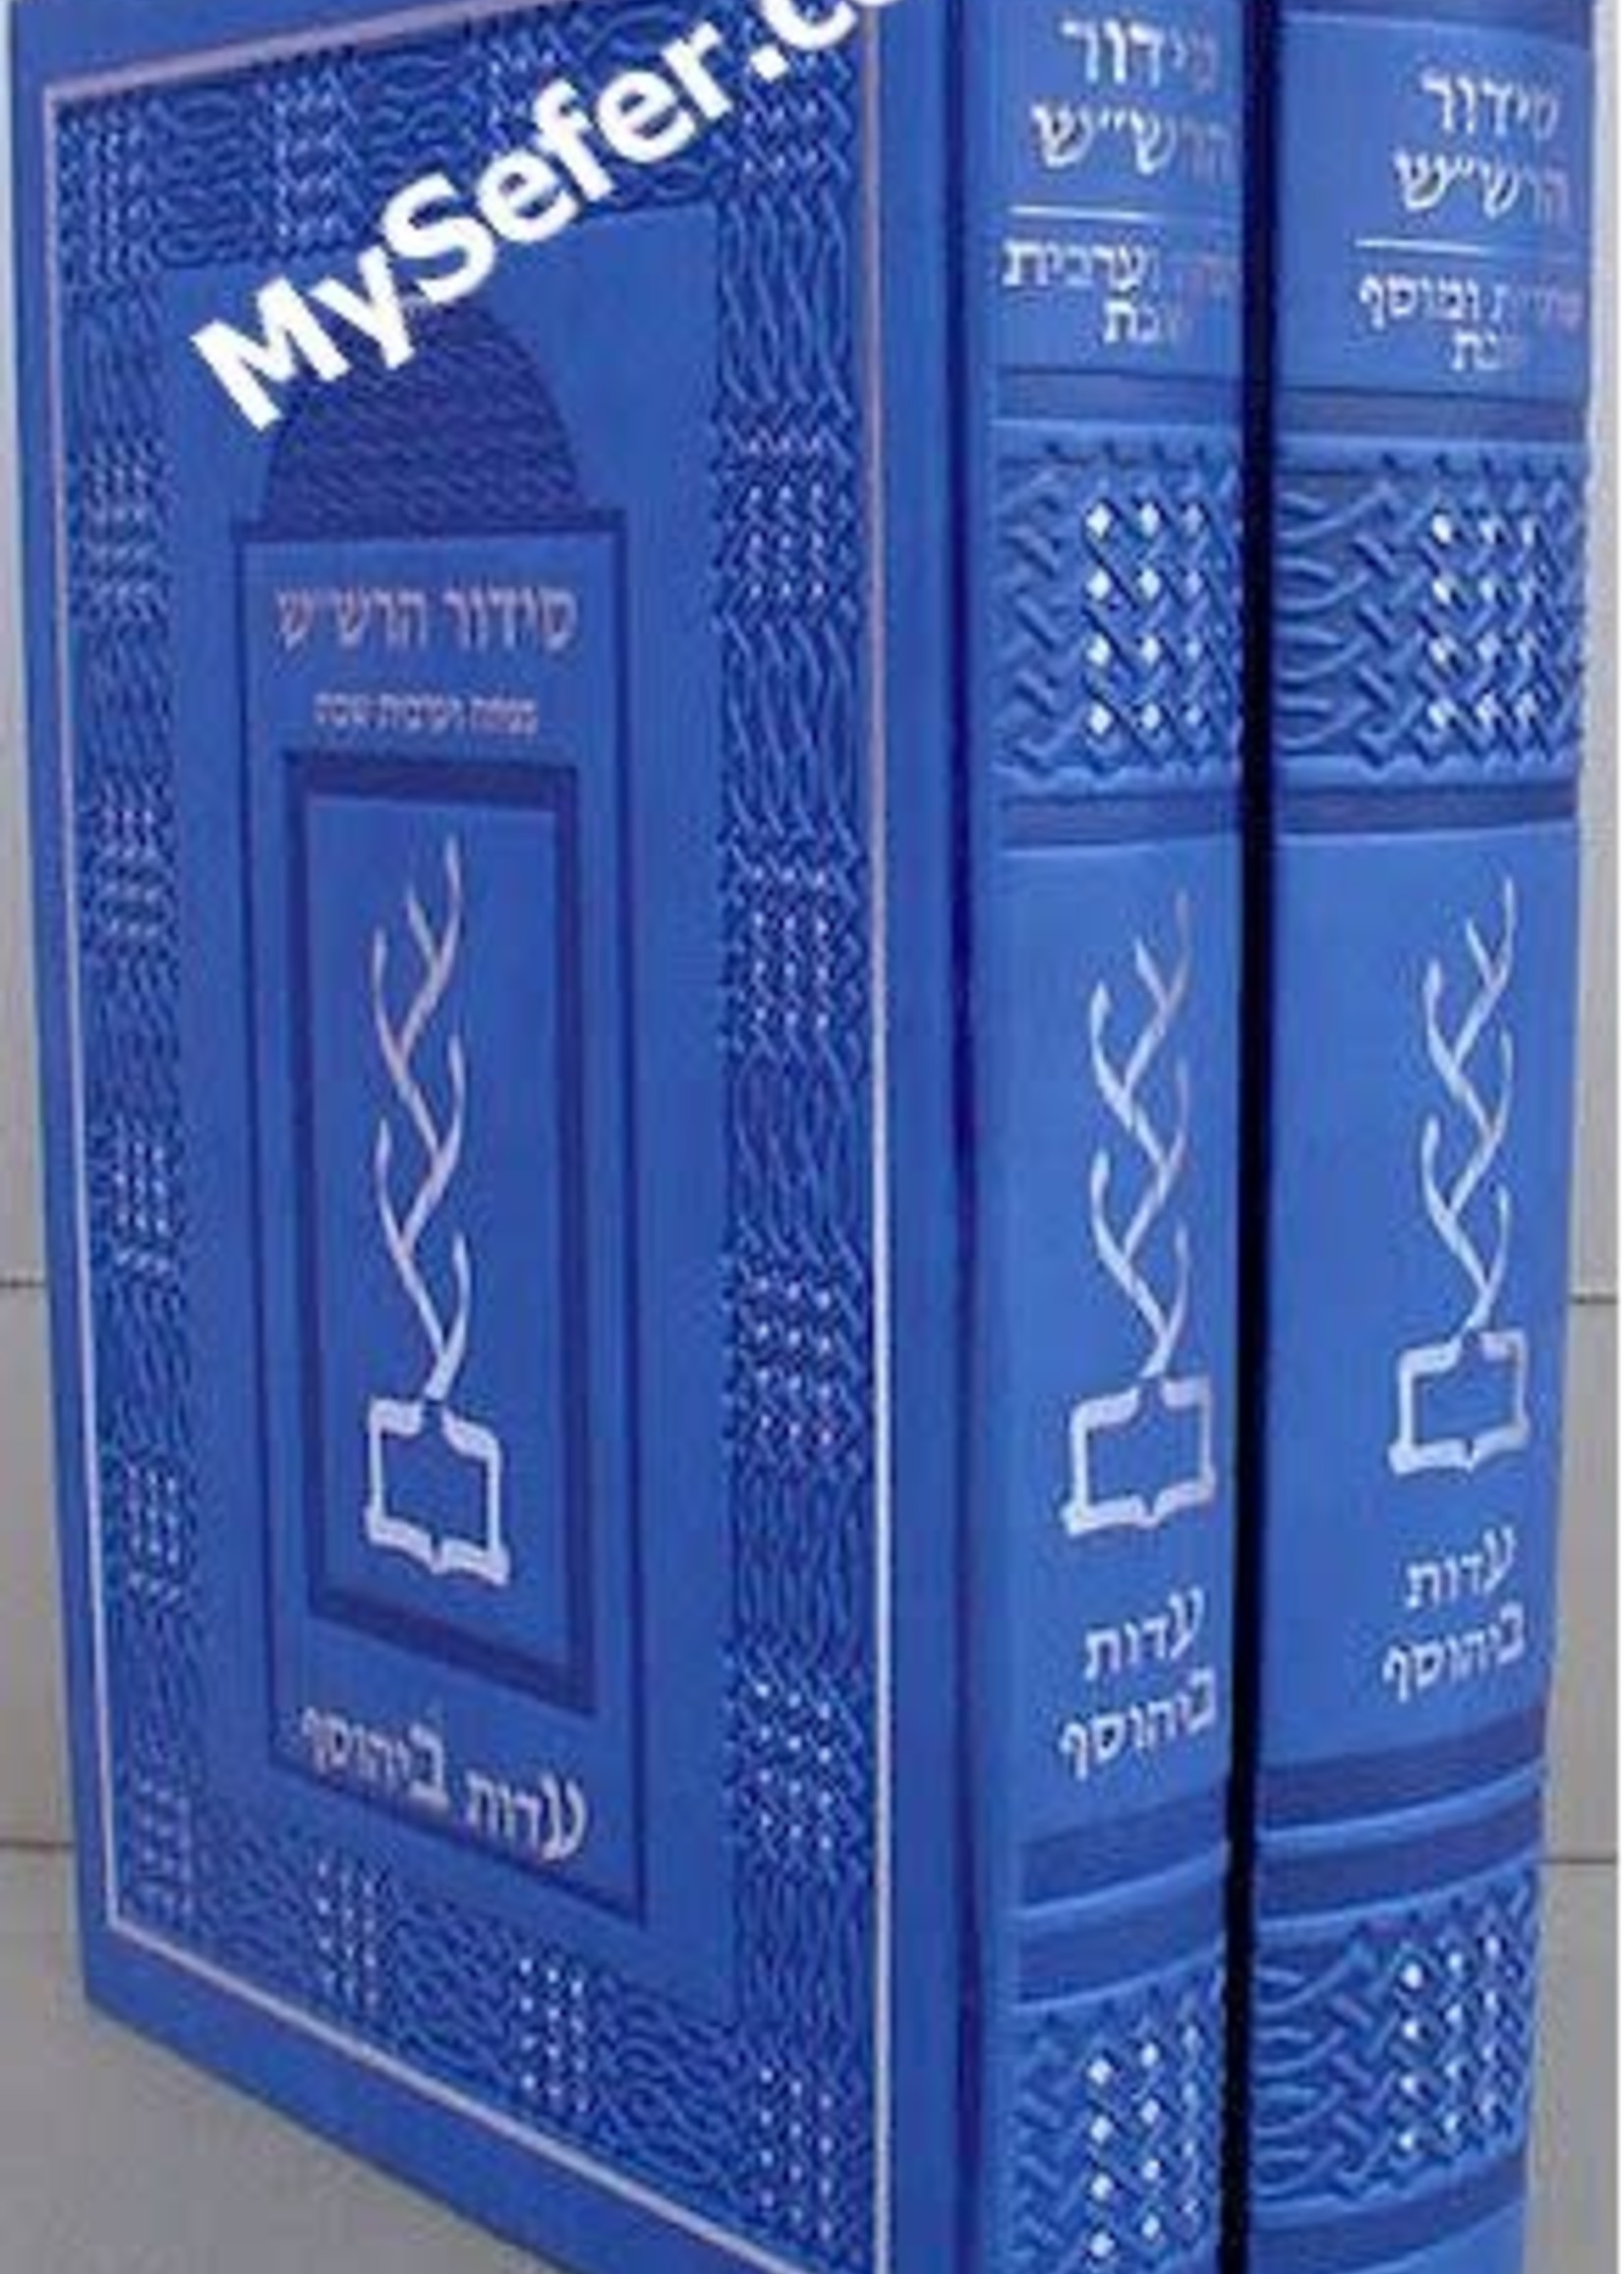 Rabbi Shalom Sharabi Siddur HaRashash in color - Shabbat : Arvit Shacharit Musaf Mincha (2 vol)/  סידור הרשש - שבת (ערבית שחרית מוסף מנחה) ב כרכים